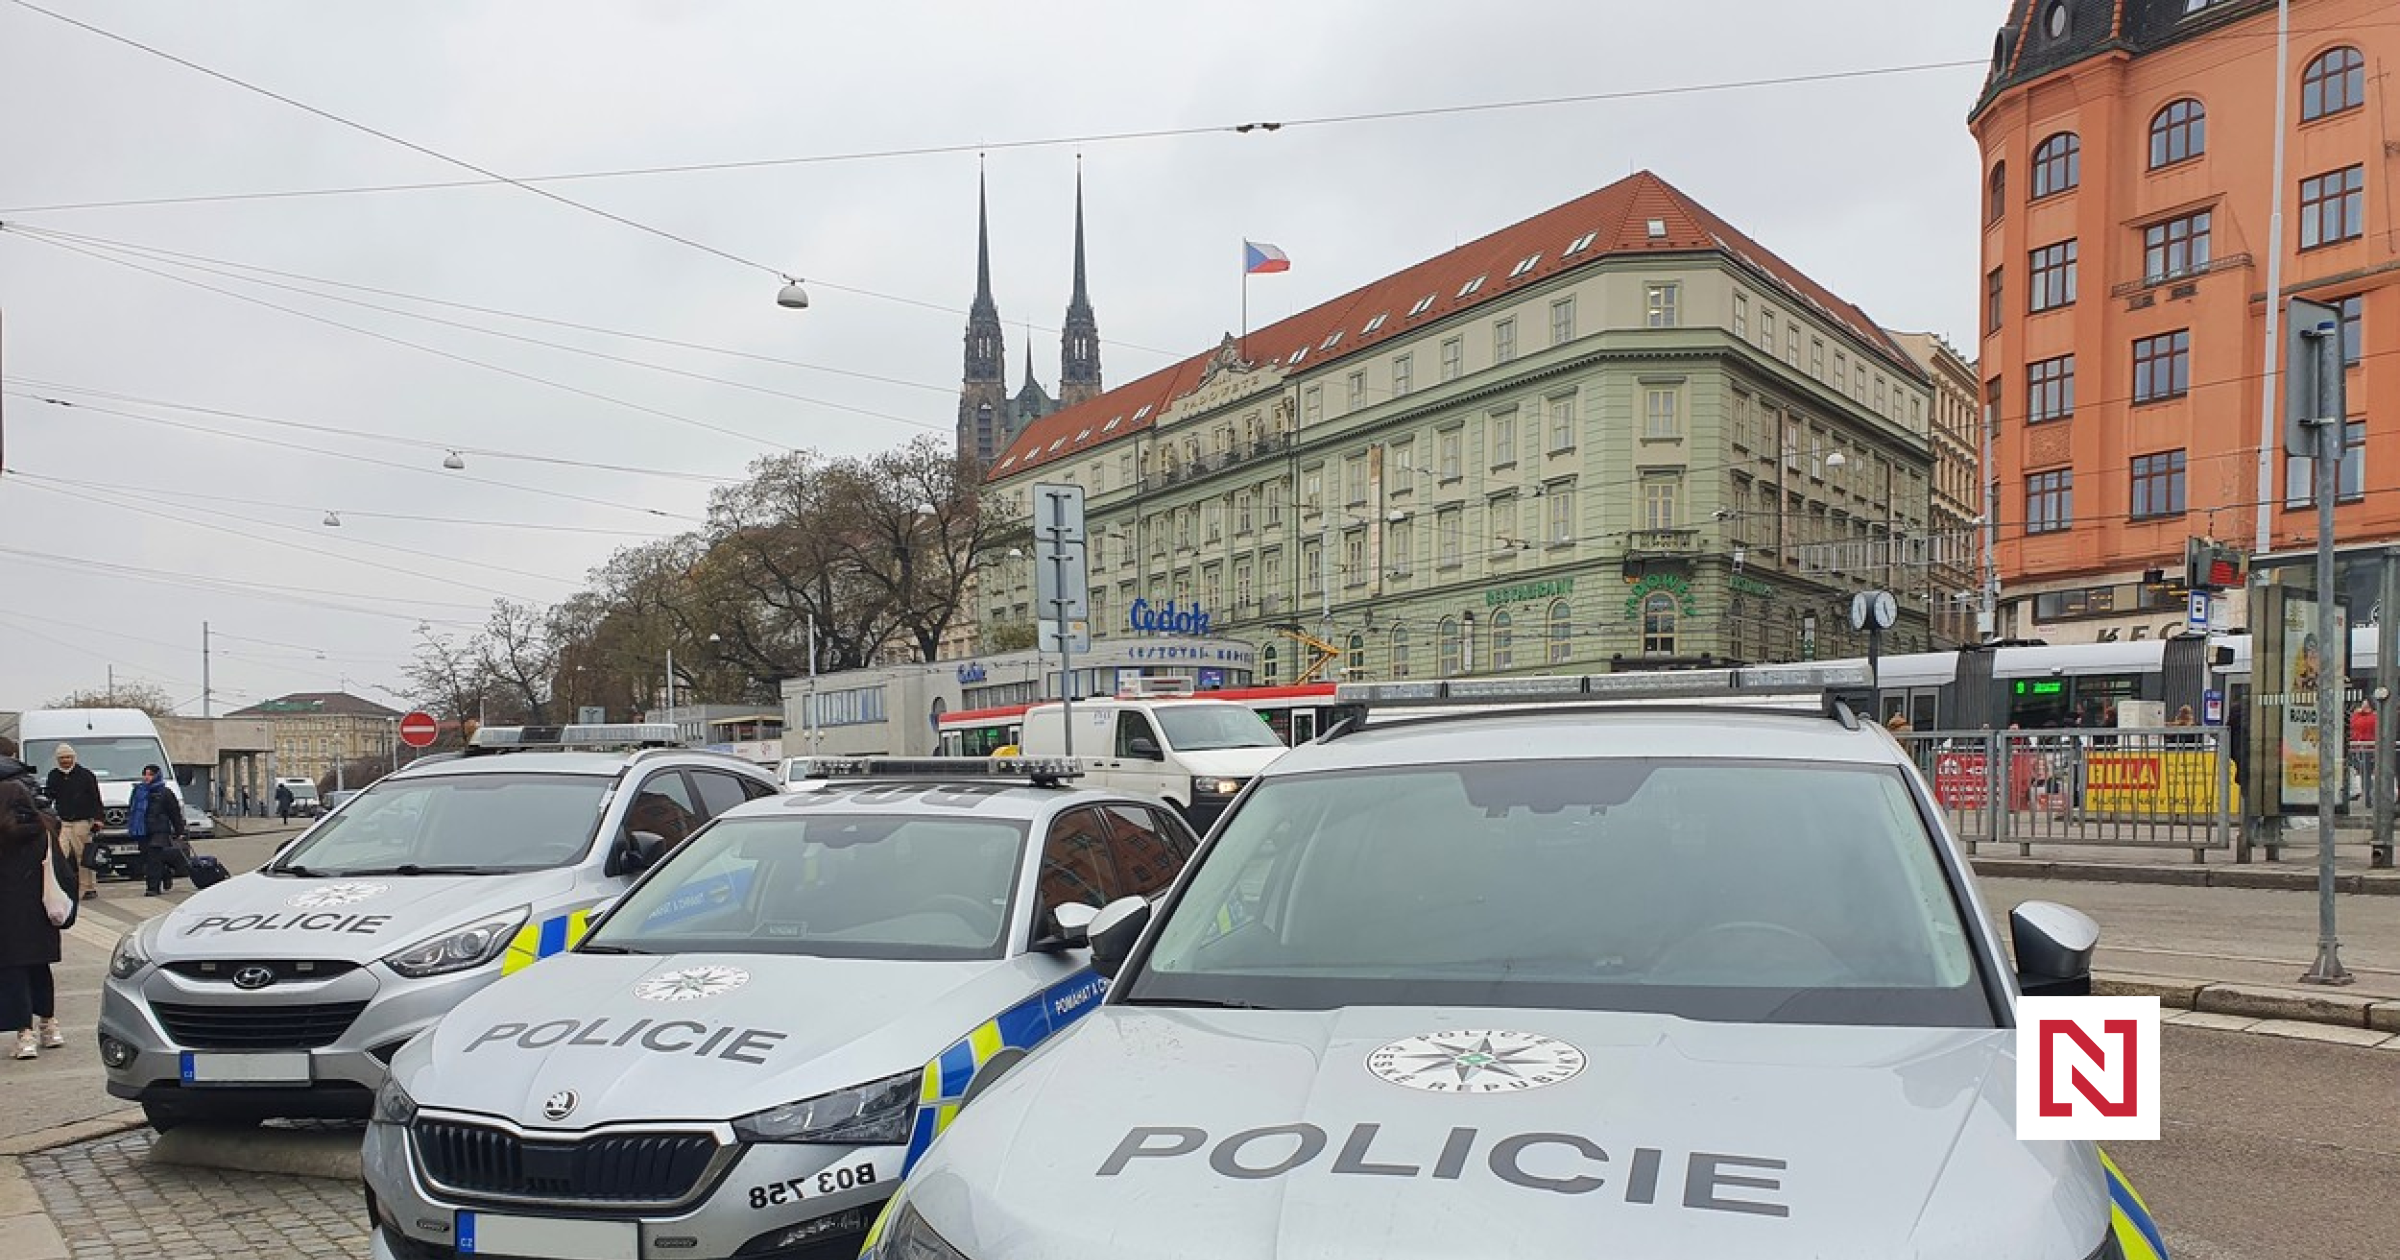 Policie stíhá v Brně šest lidí kvůli podezření z korupce. Ve vazbě je šéf bytového odboru Řečkovic